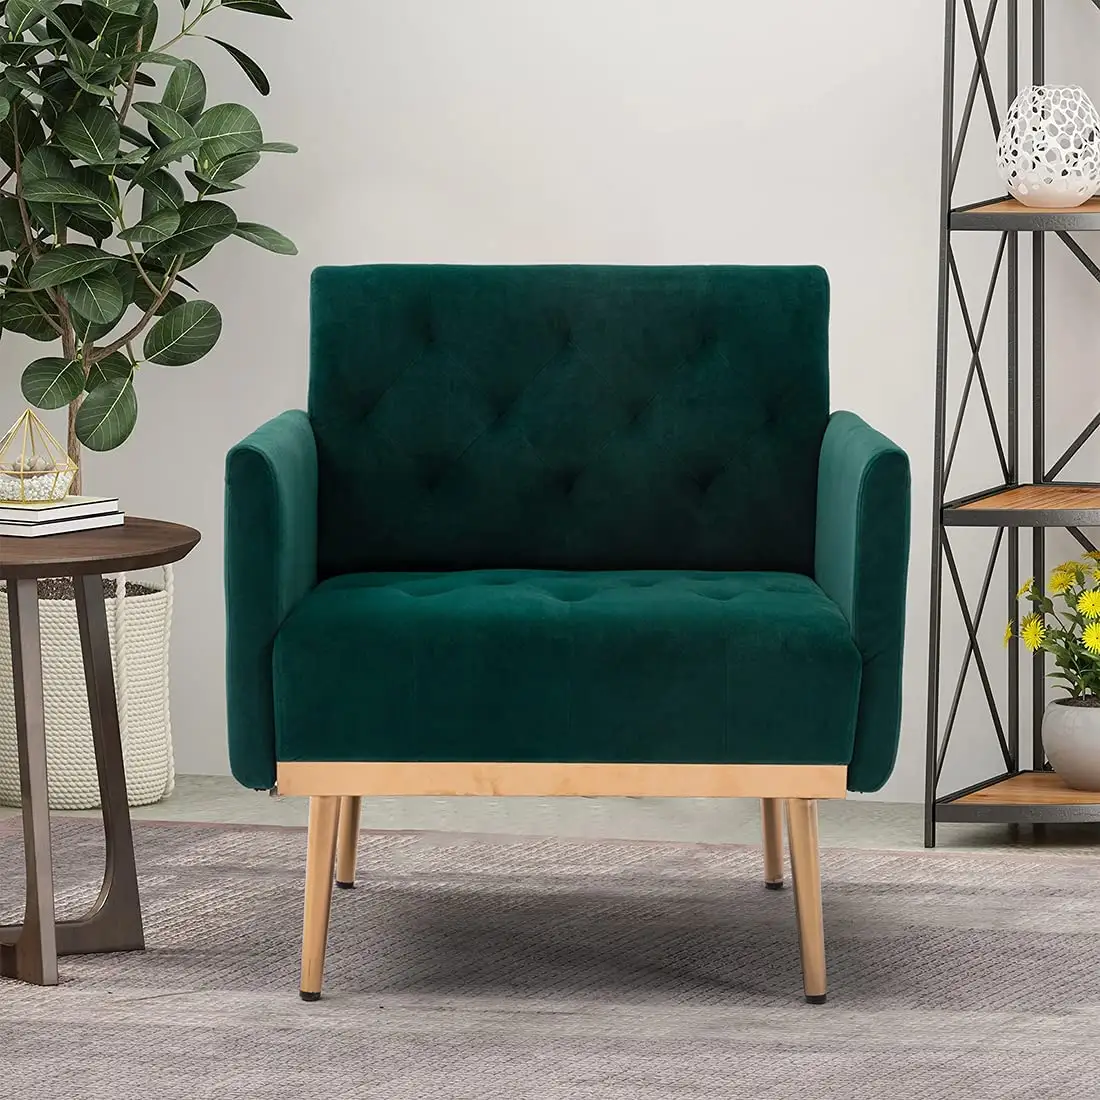 Moderne Einzels itz elegante smaragdgrüne Designer Samt getuftet Stuhl Stühle Möbel Wohnzimmer